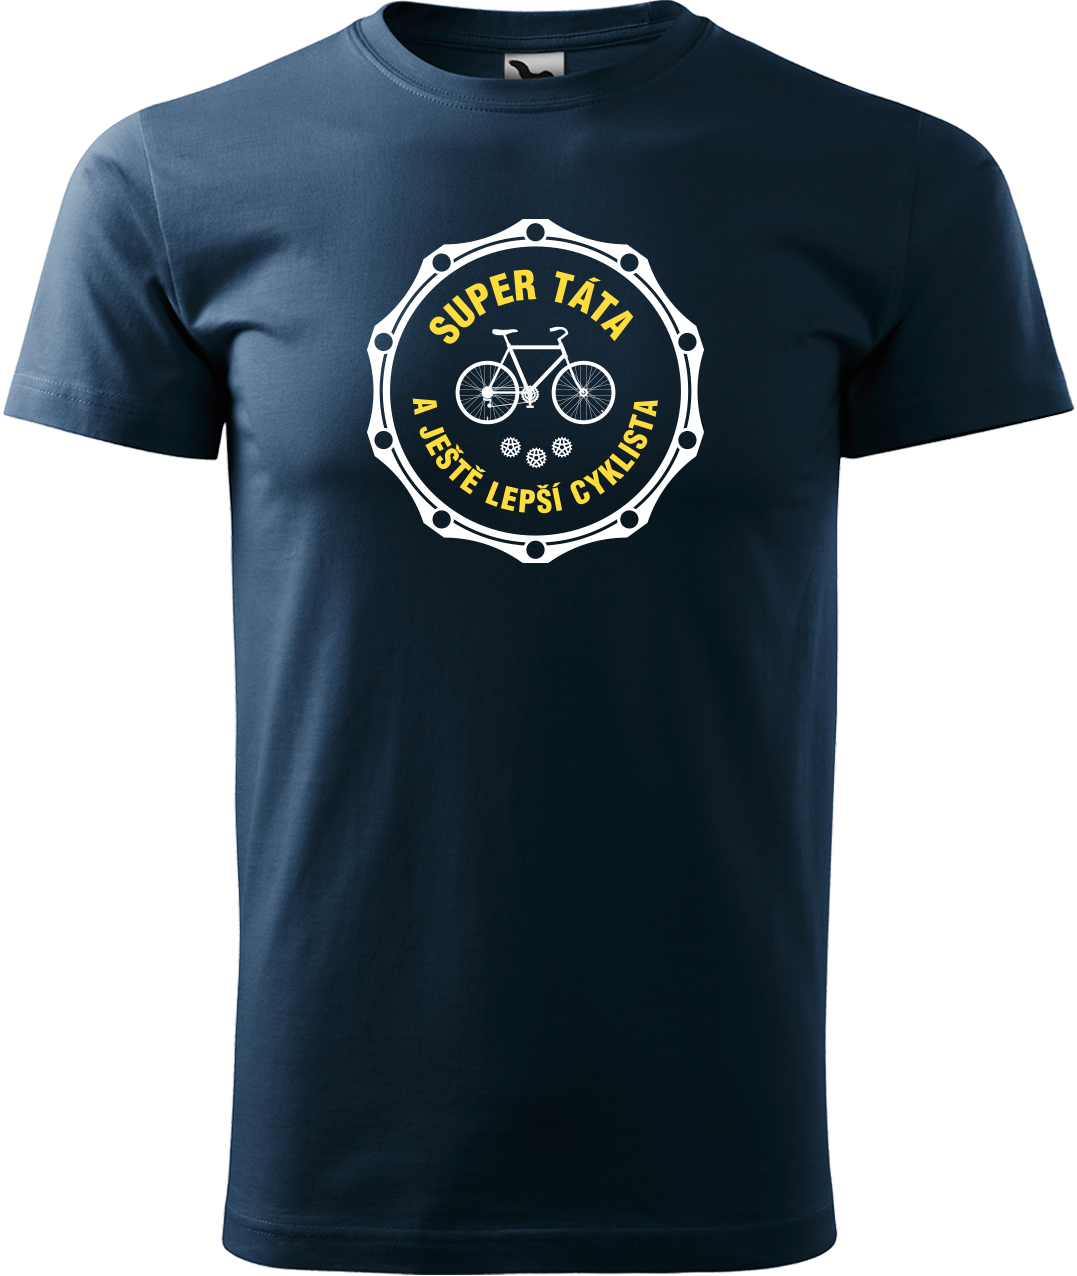 Pánské tričko pro cyklistu - Super táta a ještě lepší cyklista Velikost: L, Barva: Námořní modrá (02)